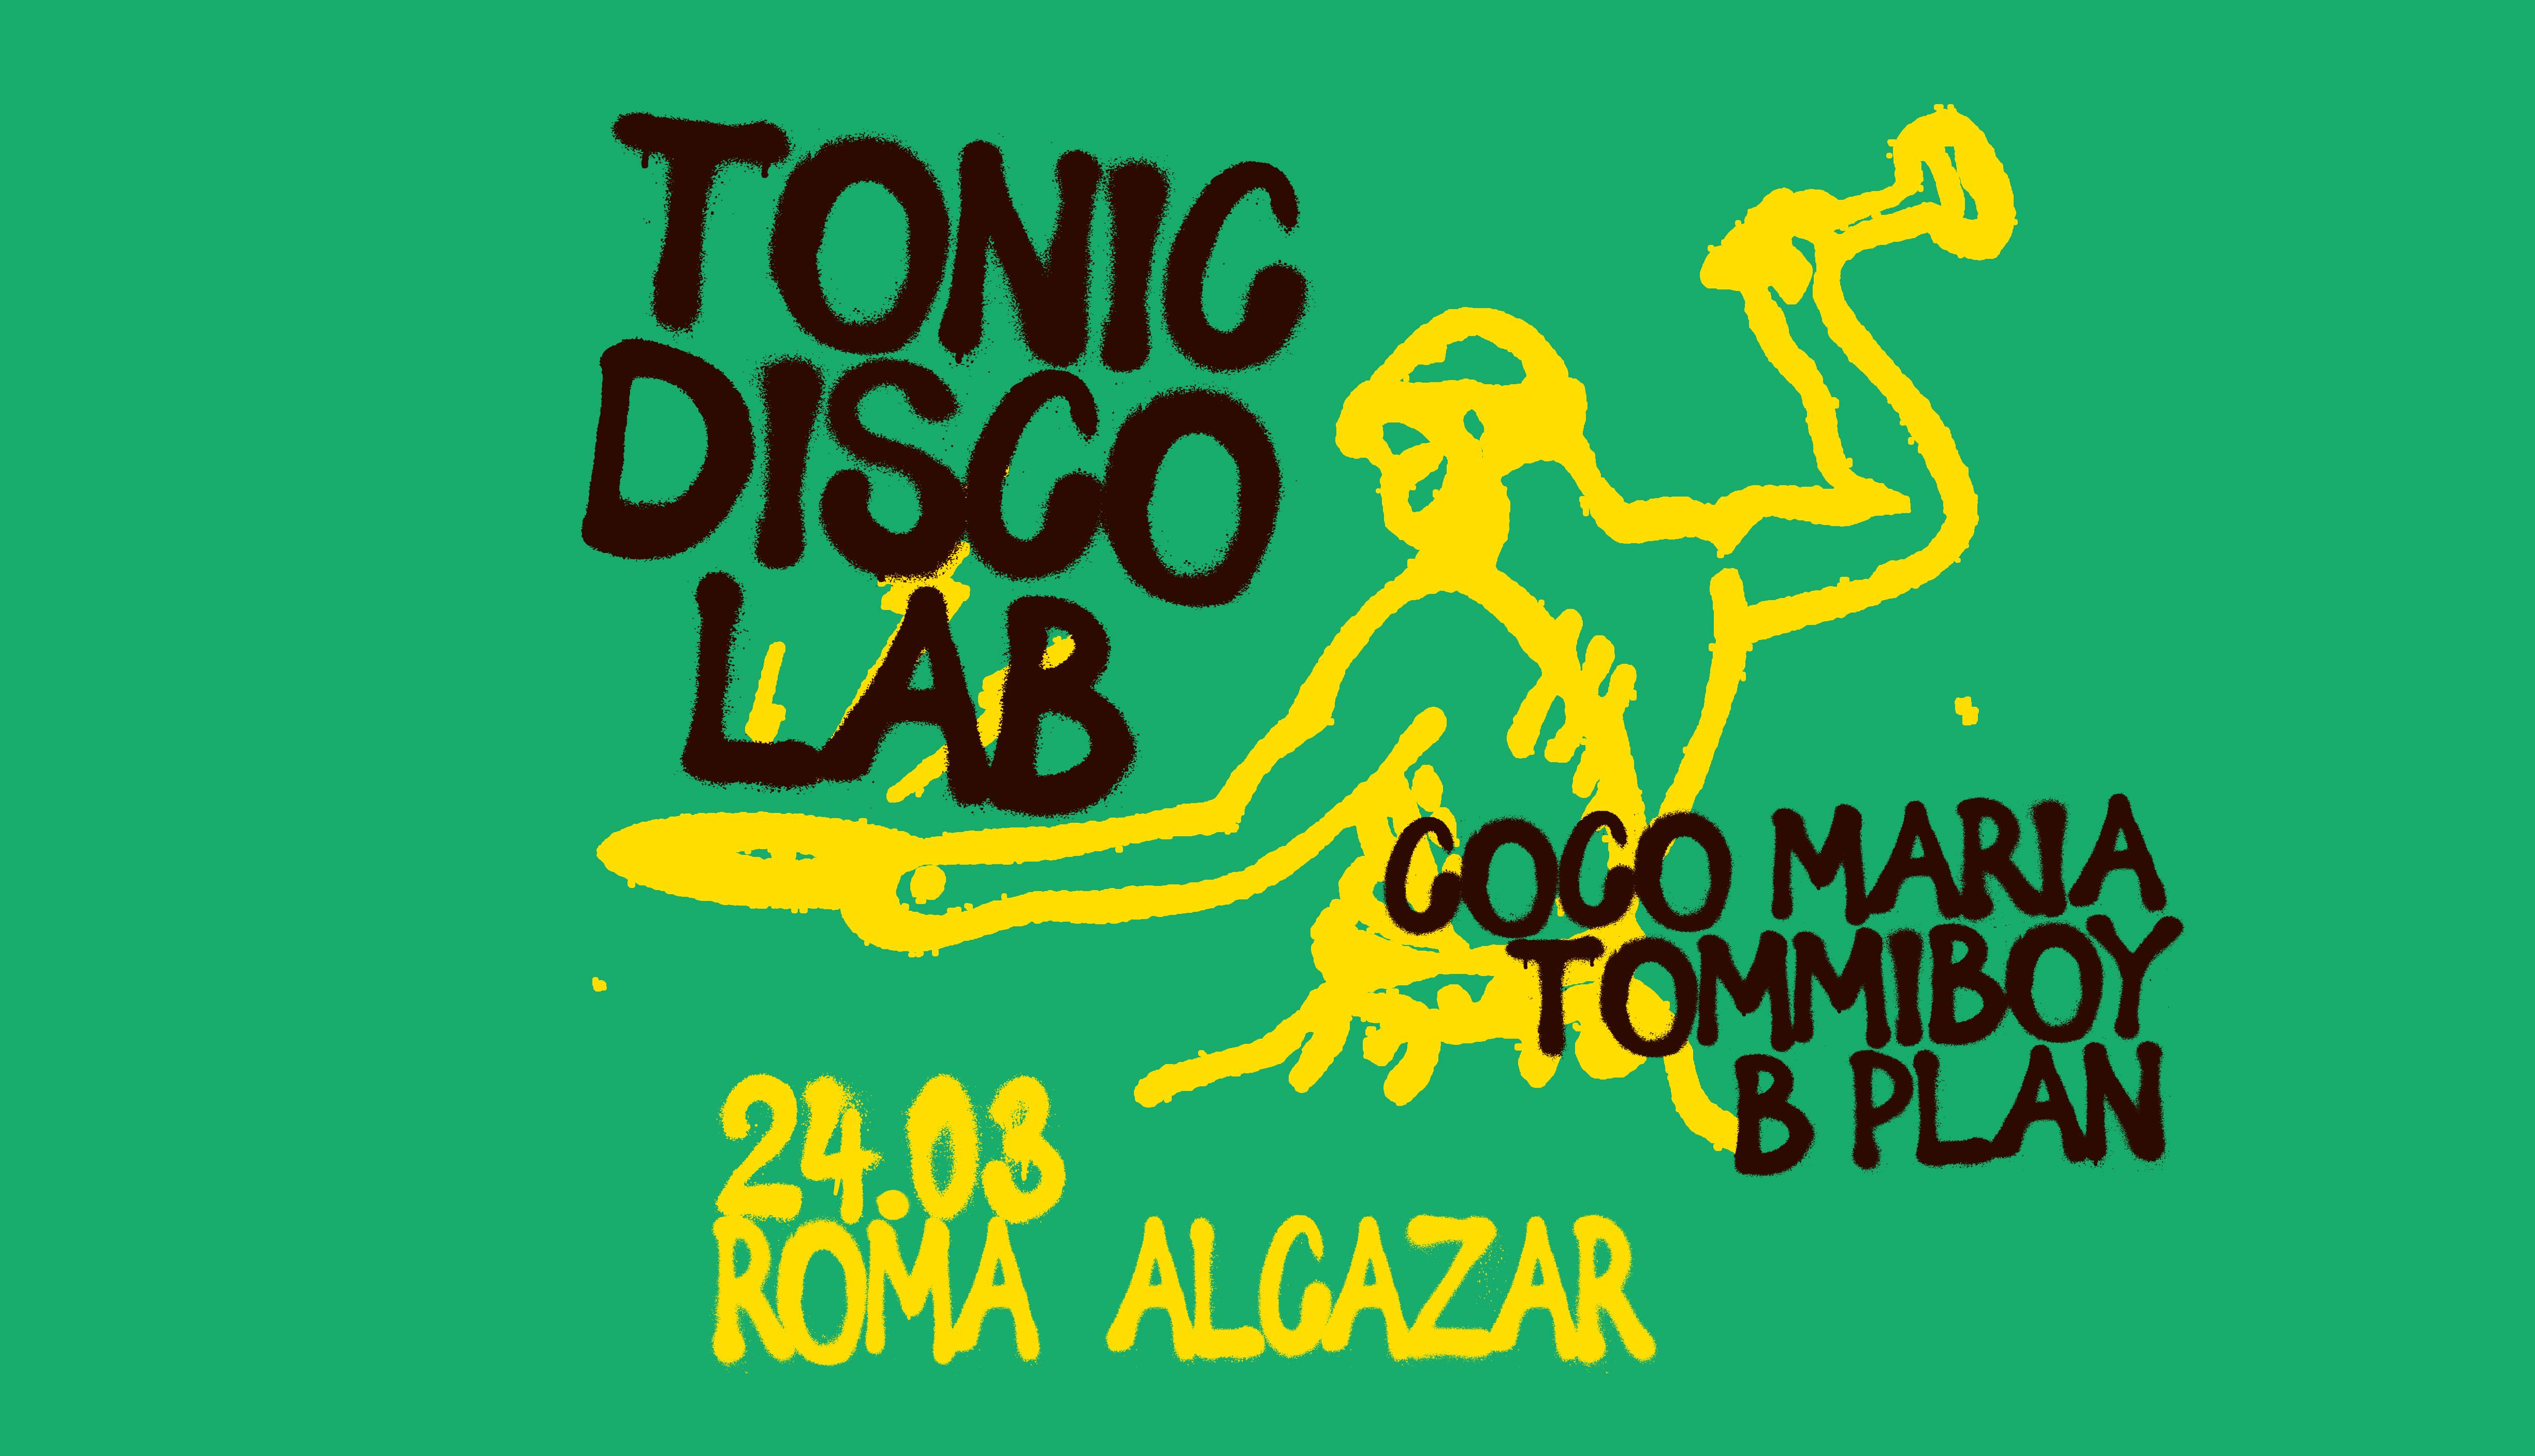 Tonic Disco Lab 7 - フライヤー表